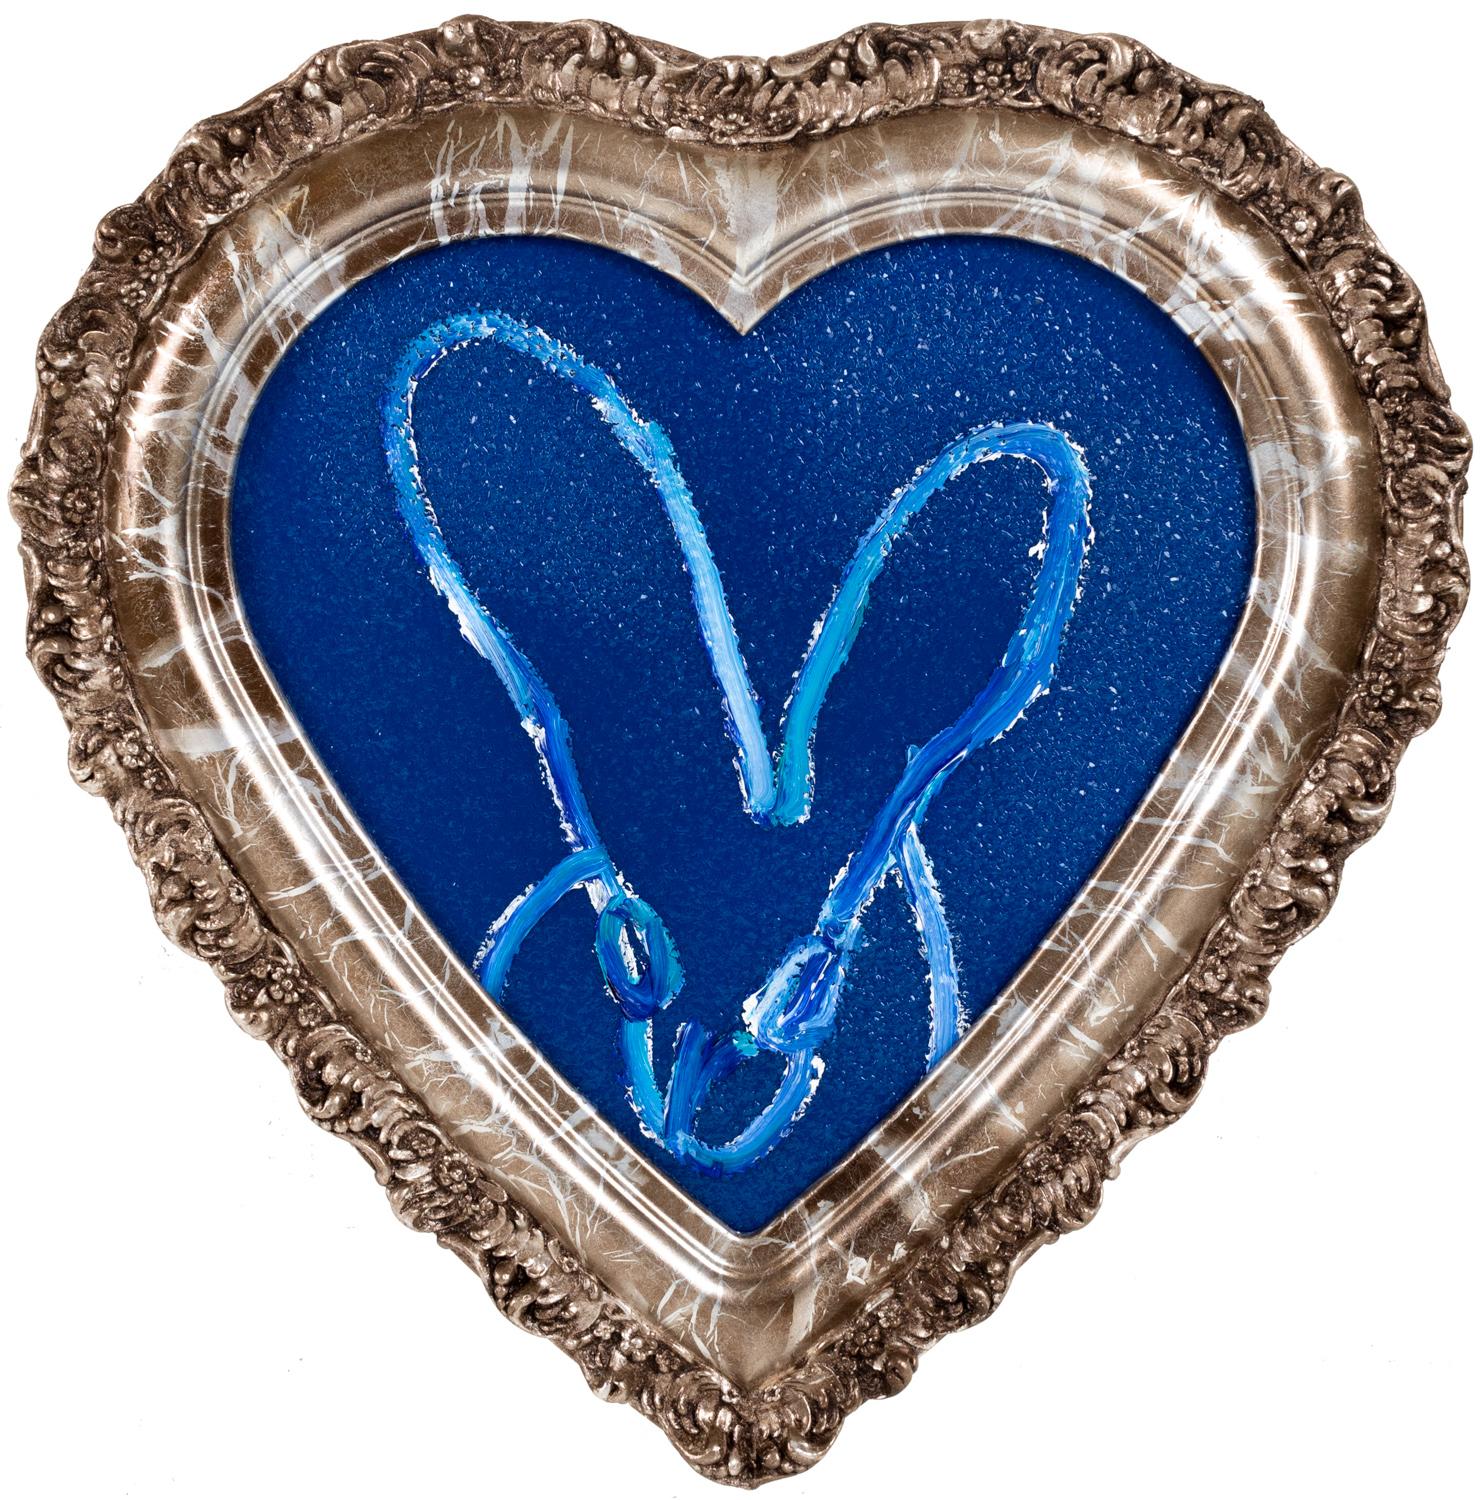 Hunt Slonem "Untitled" Blue White Outline Bunny On Blue Diamond-Dust Heart